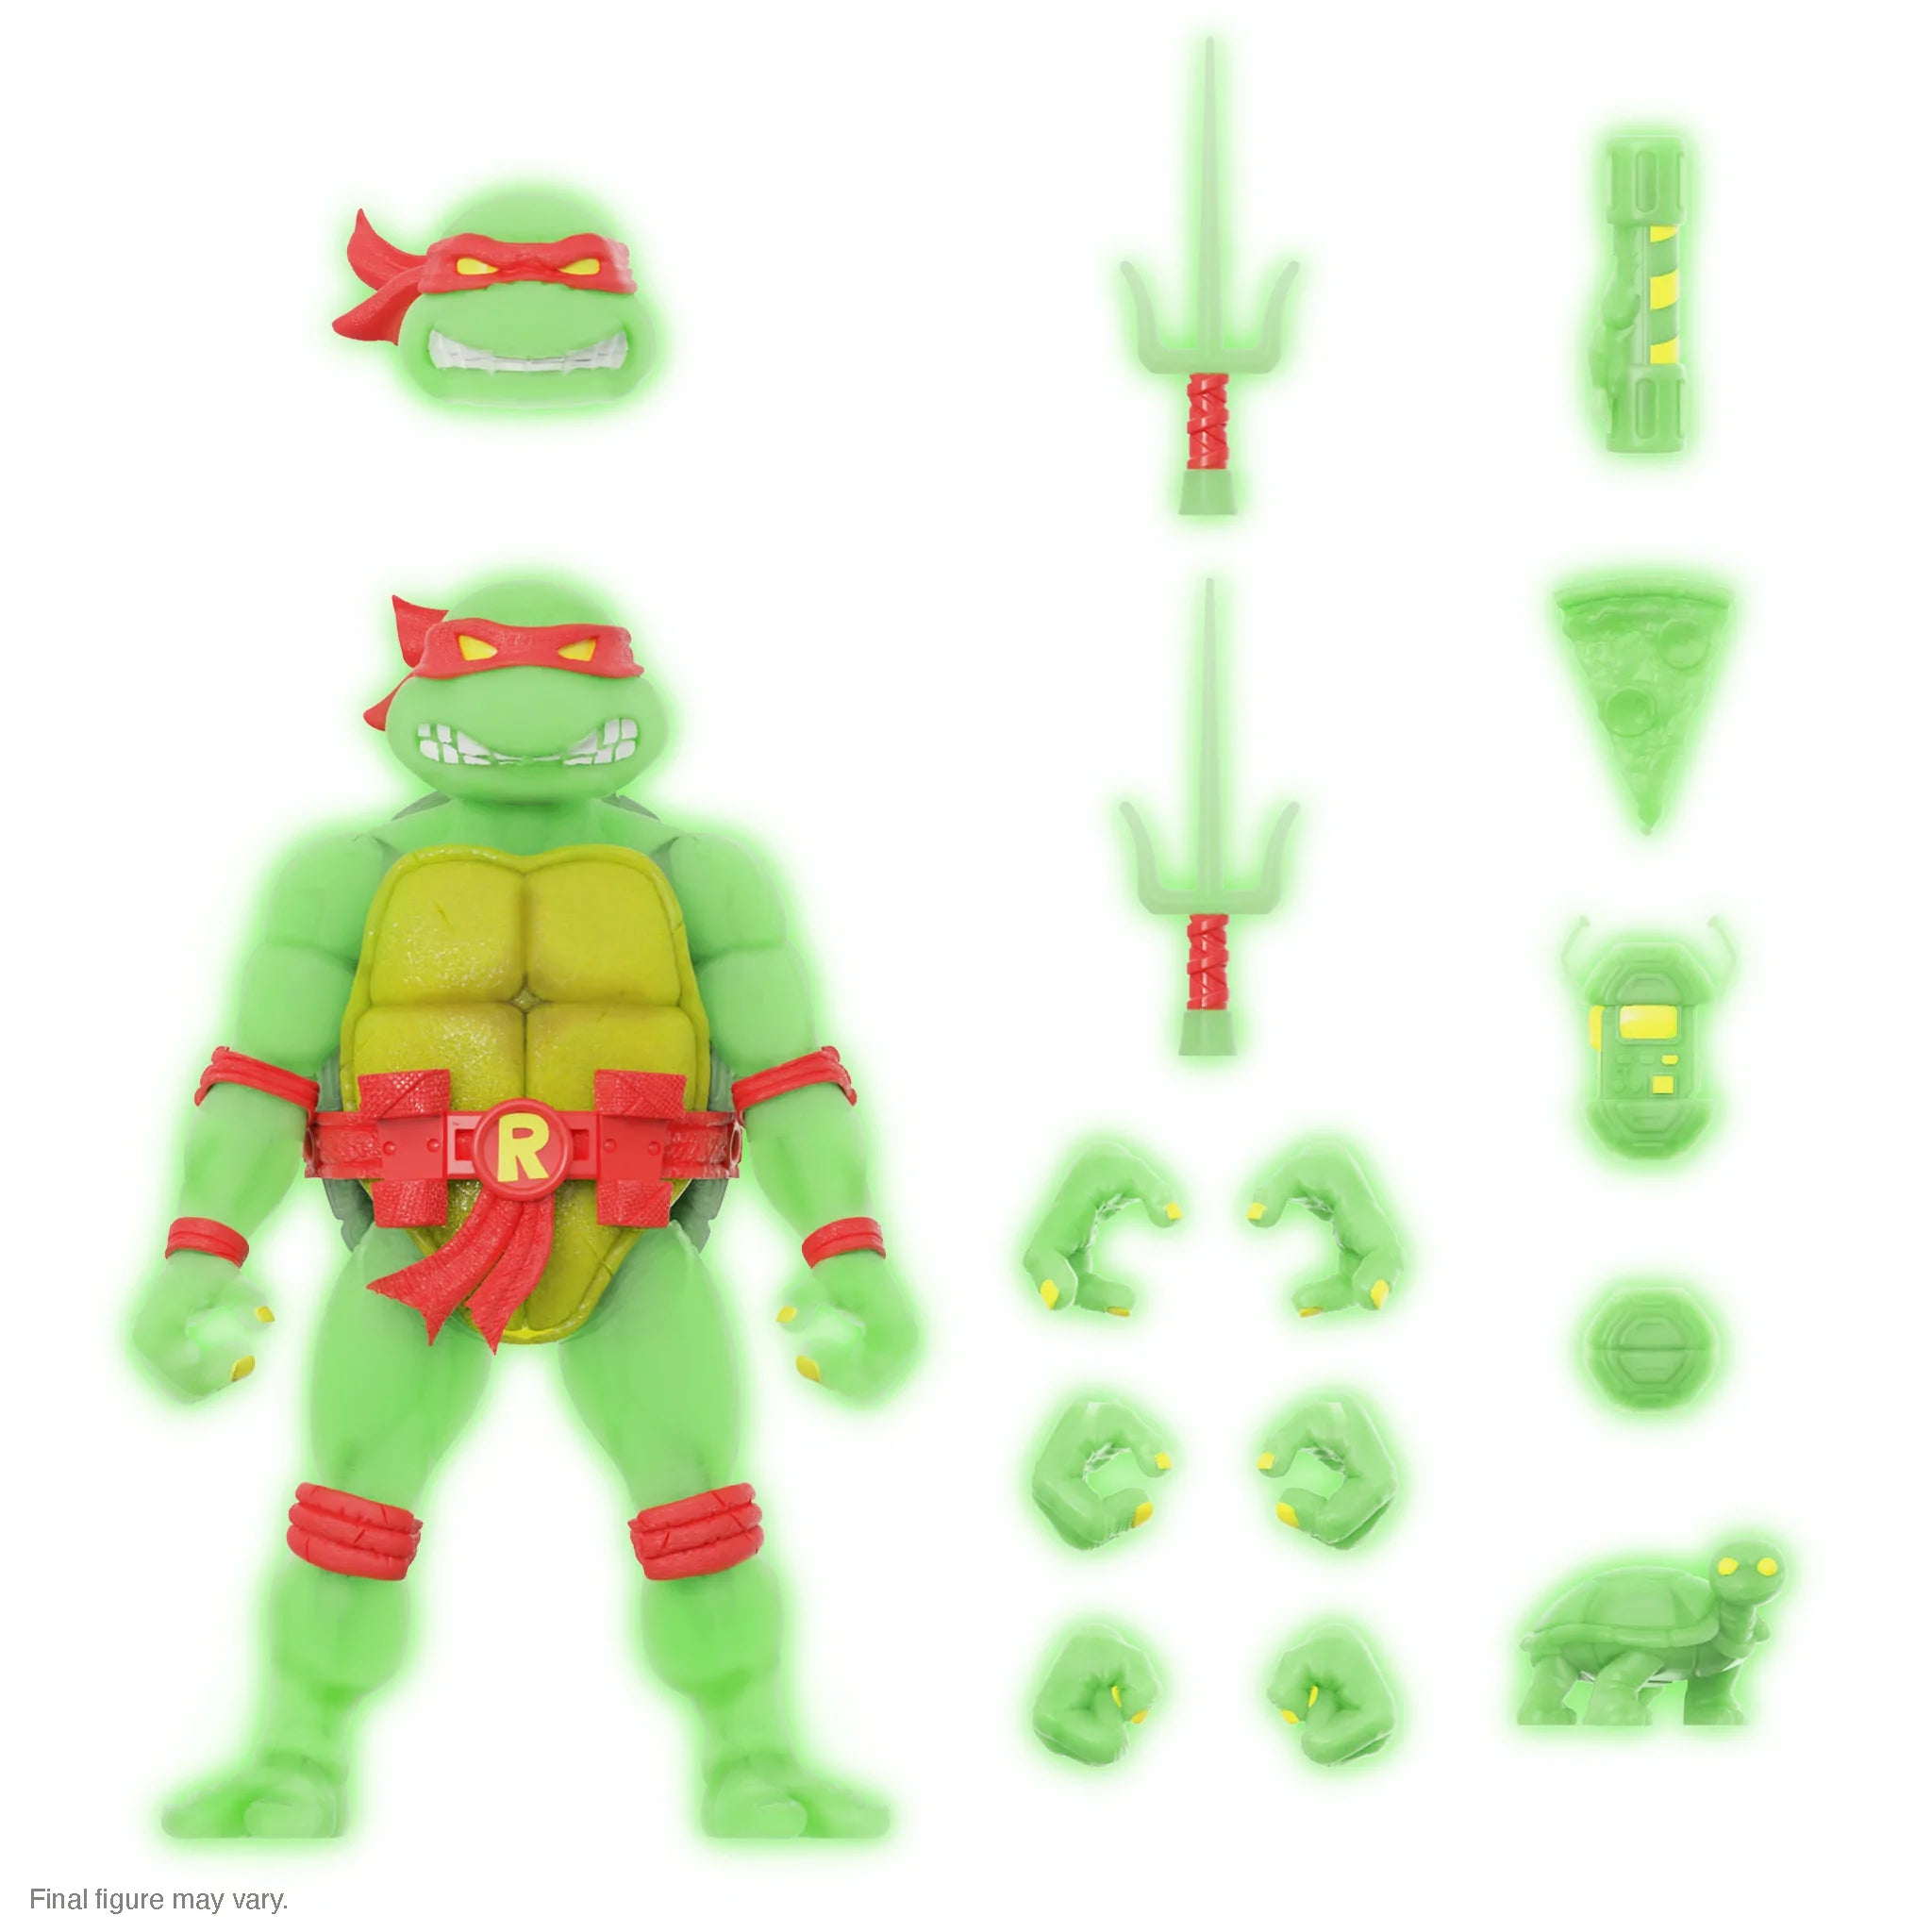 Super7 - Teenage Mutant Ninja Turtles ULTIMATES! Exclusive - Raphael Mutagen Ooze - Marvelous Toys